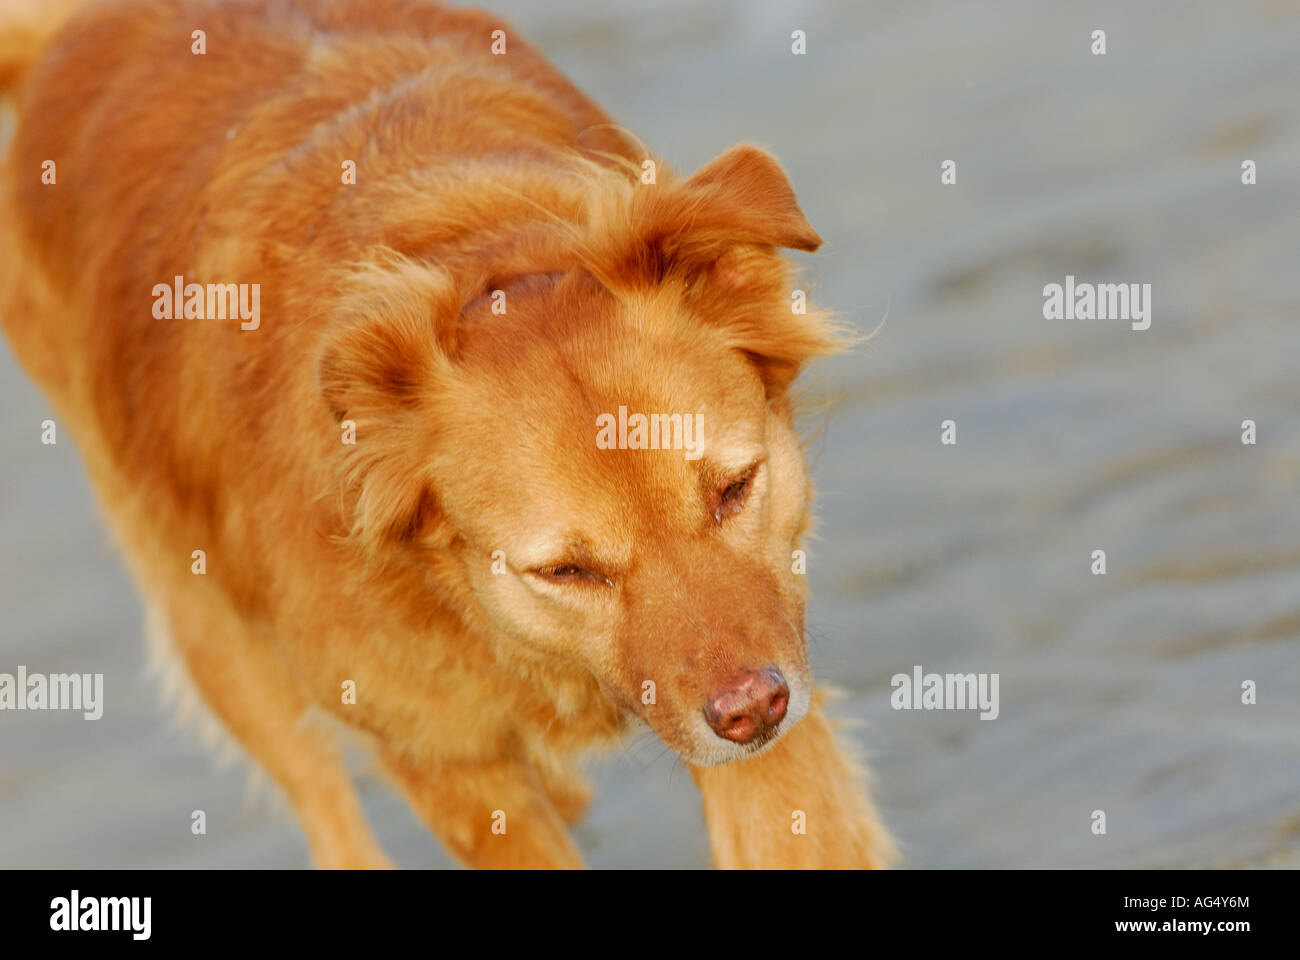 Cane sulla spiaggia in esecuzione con un rivestimento dorato e un aspetto sano ansimando senza fiato cane walking mantello lucido walkies Foto Stock